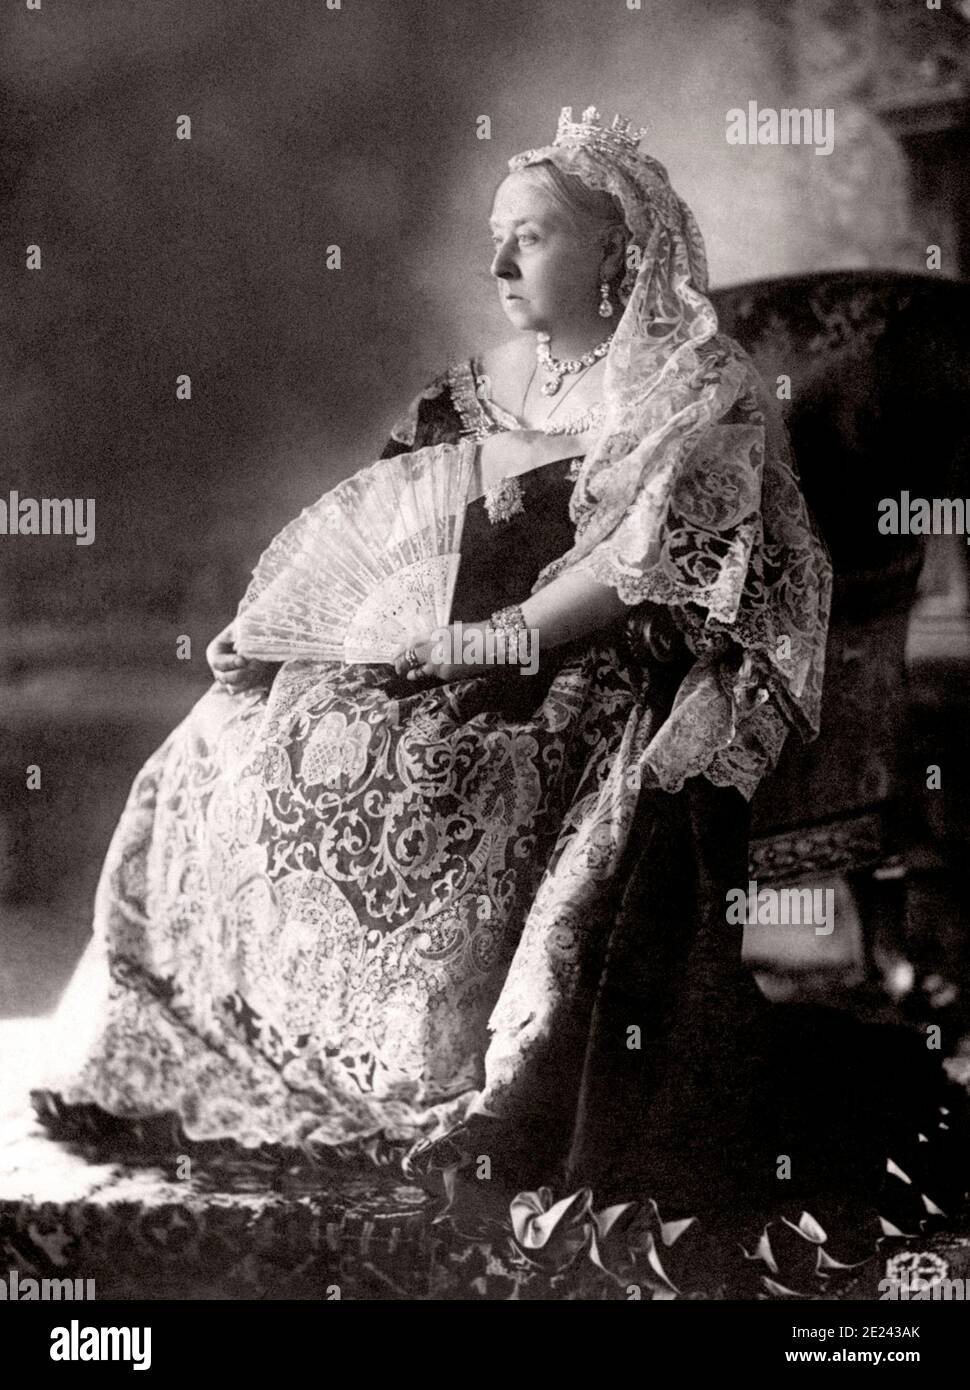 La regina Vittoria per il Giubileo di Diamante ritratto fotografico. Victoria (1819 - 1901) fu Regina del Regno Unito di Gran Bretagna e Irlanda da 20 Ju Foto Stock